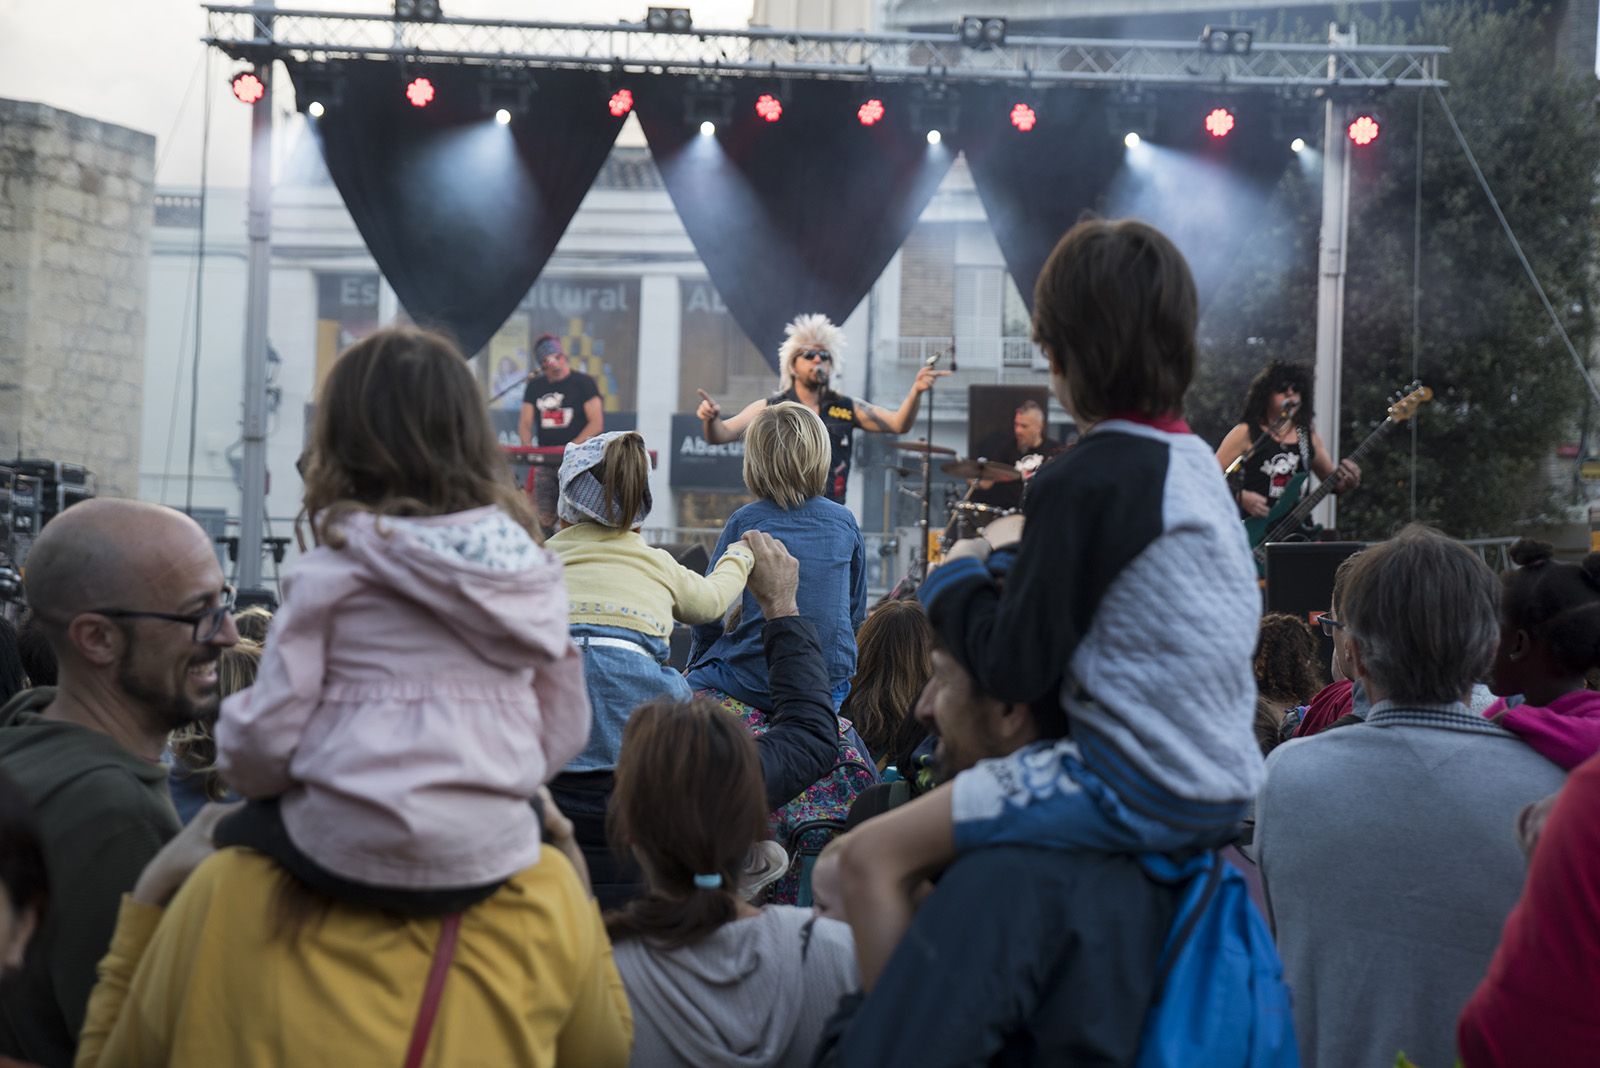 Concert inaugural de Petits Camaleons  amb Heavy per Xics. FOTO: Bernat Millet.